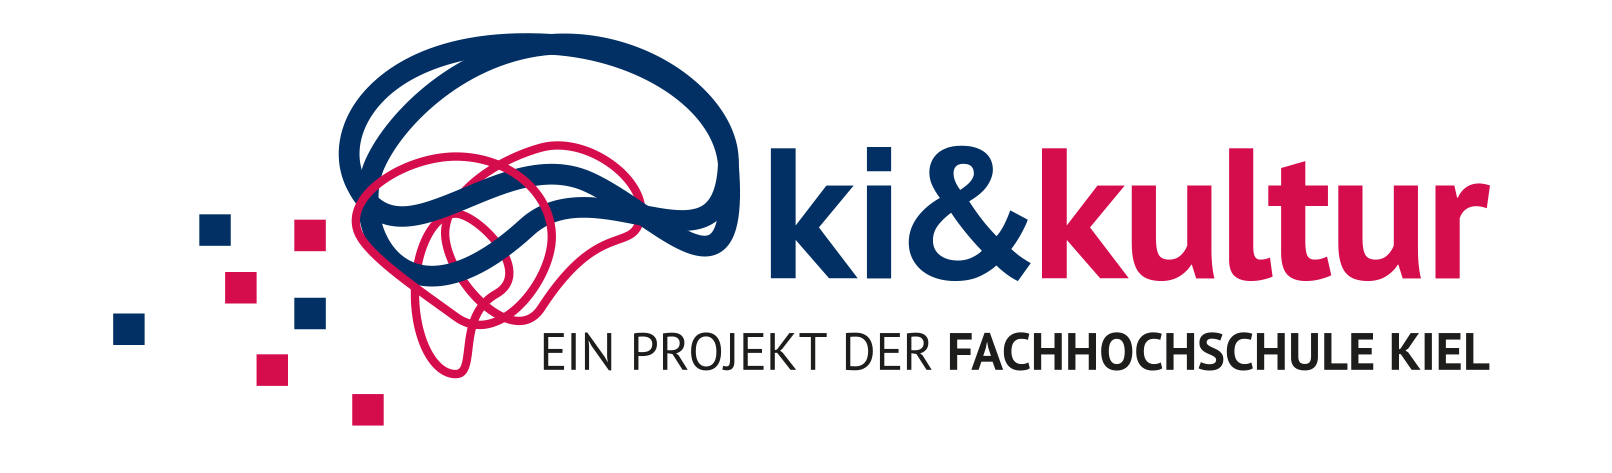 Logo ki und kultur, ein Projekt der Fachhochschule Kiel.